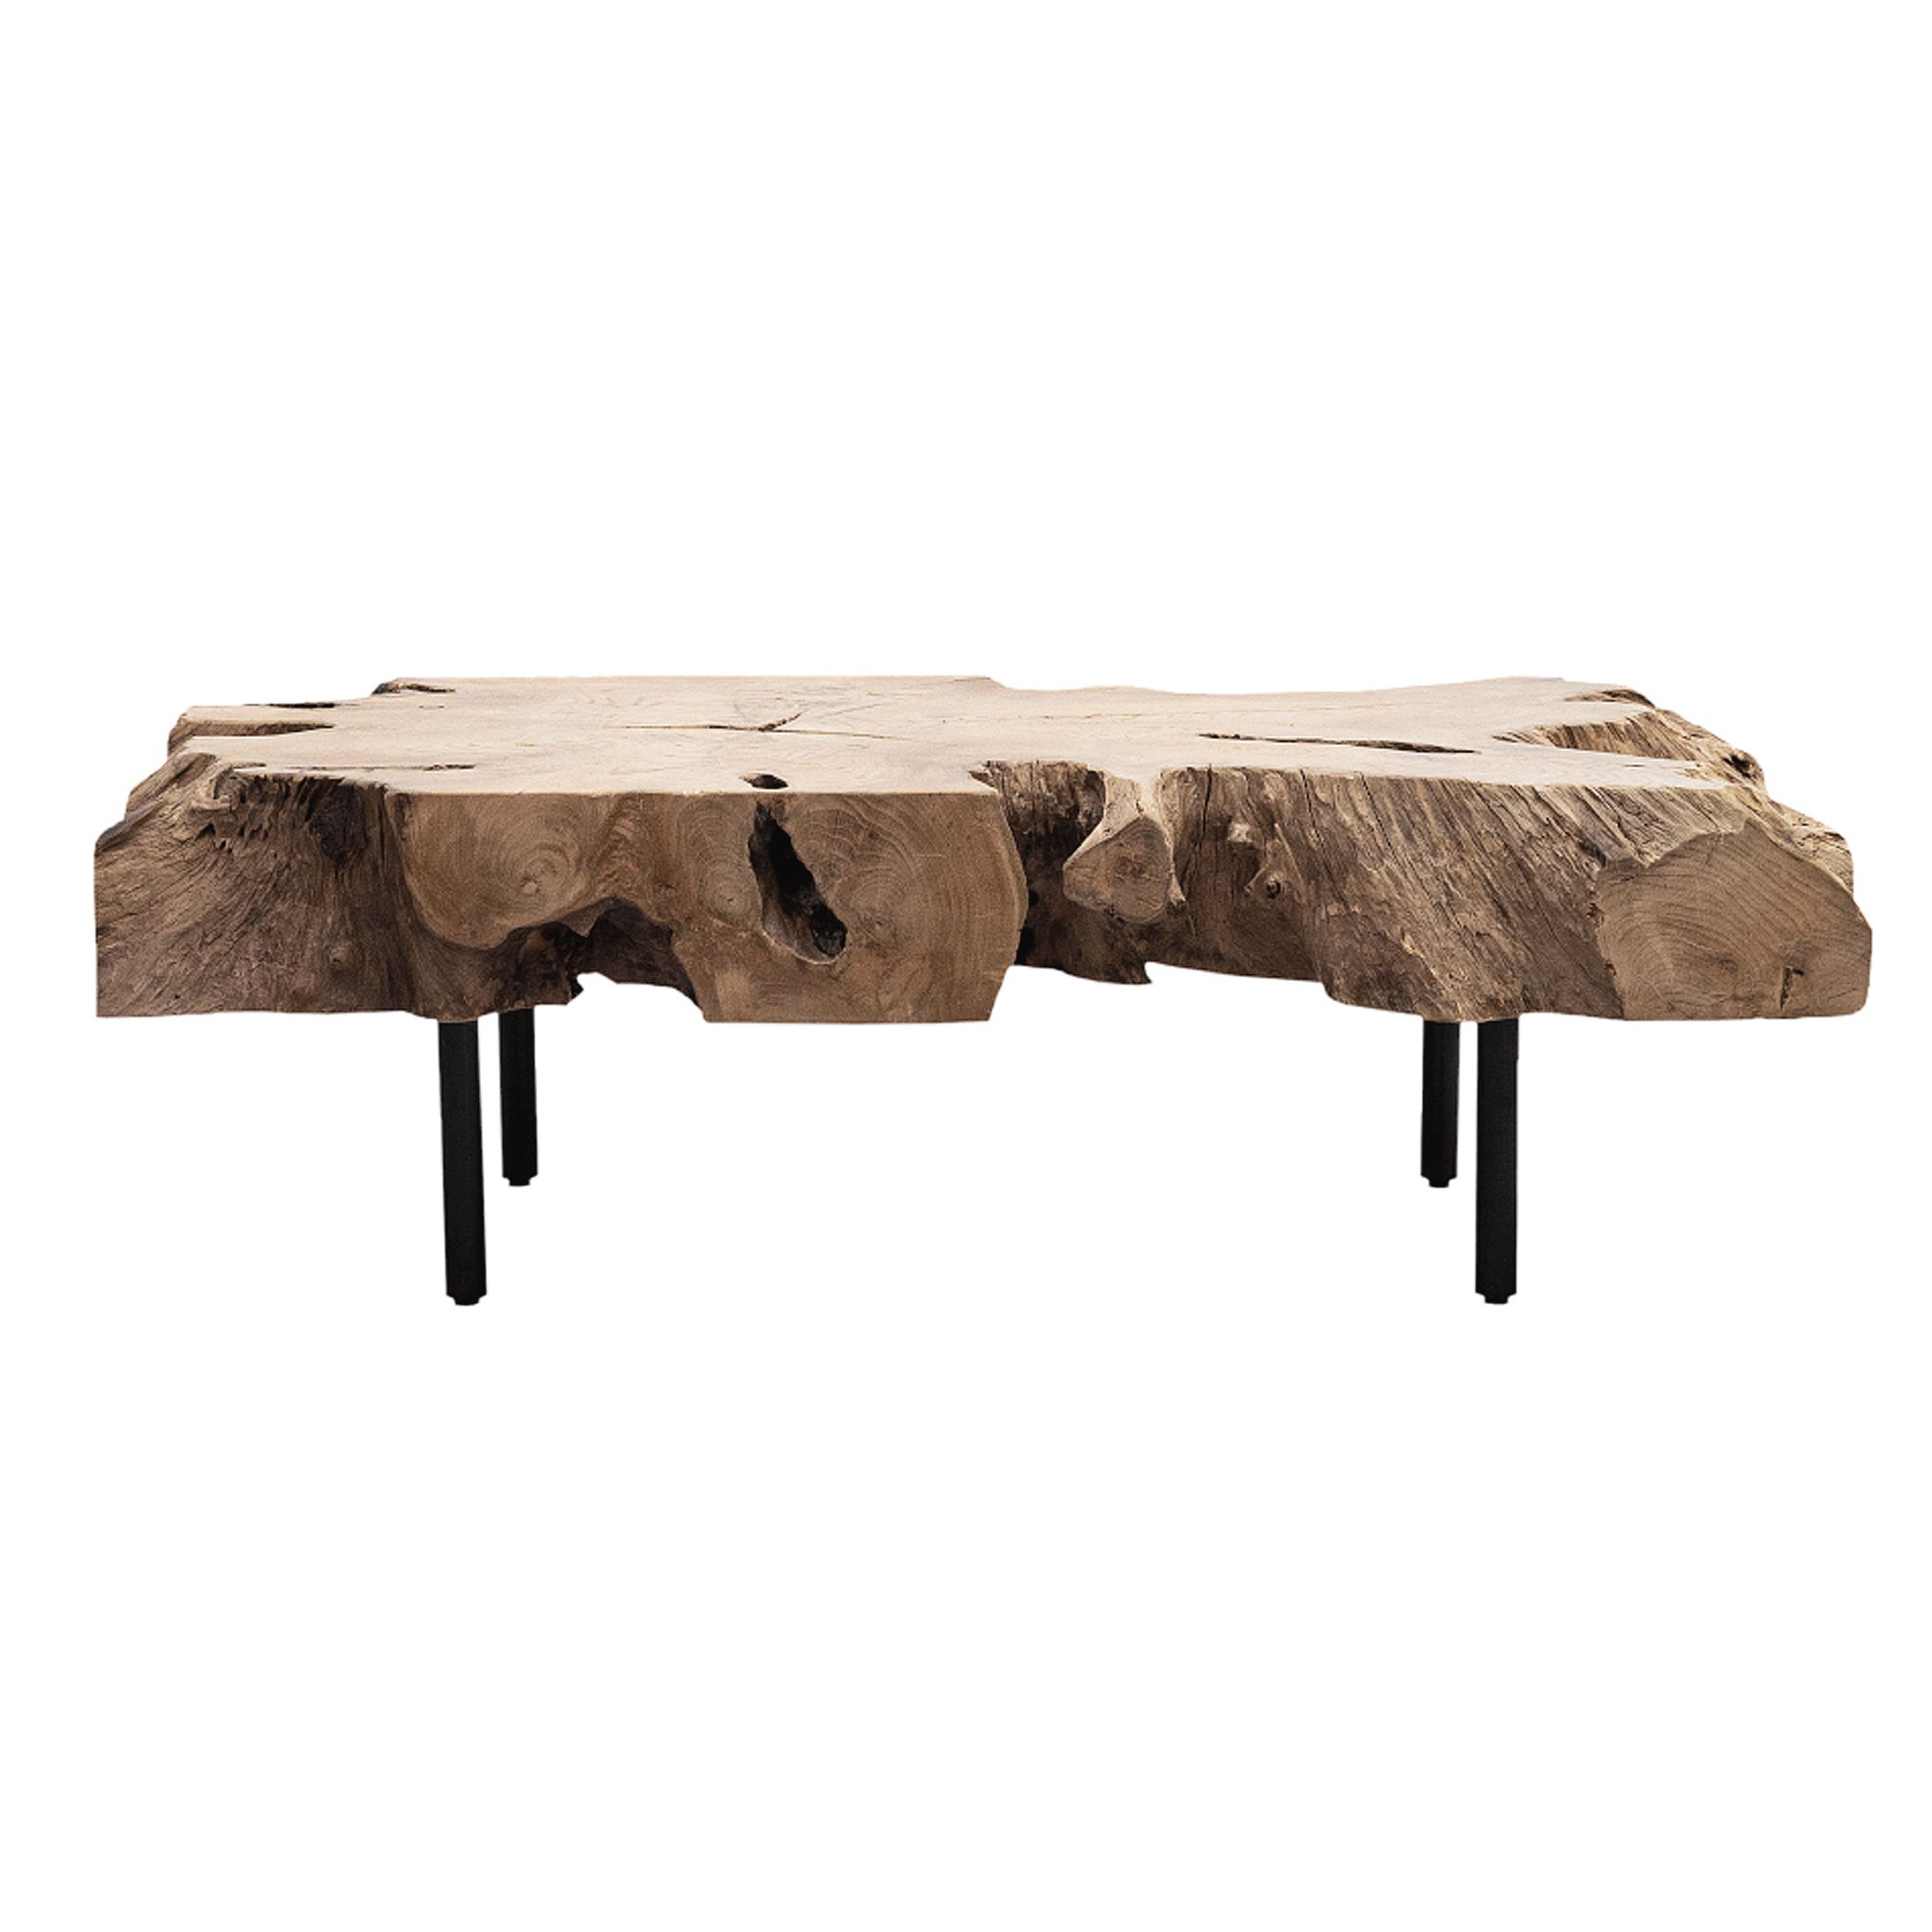 Buy Rustic Teak Wood Tree Root Coffee Table | Oliveira With Solid Teak Wood Coffee Tables (View 2 of 20)